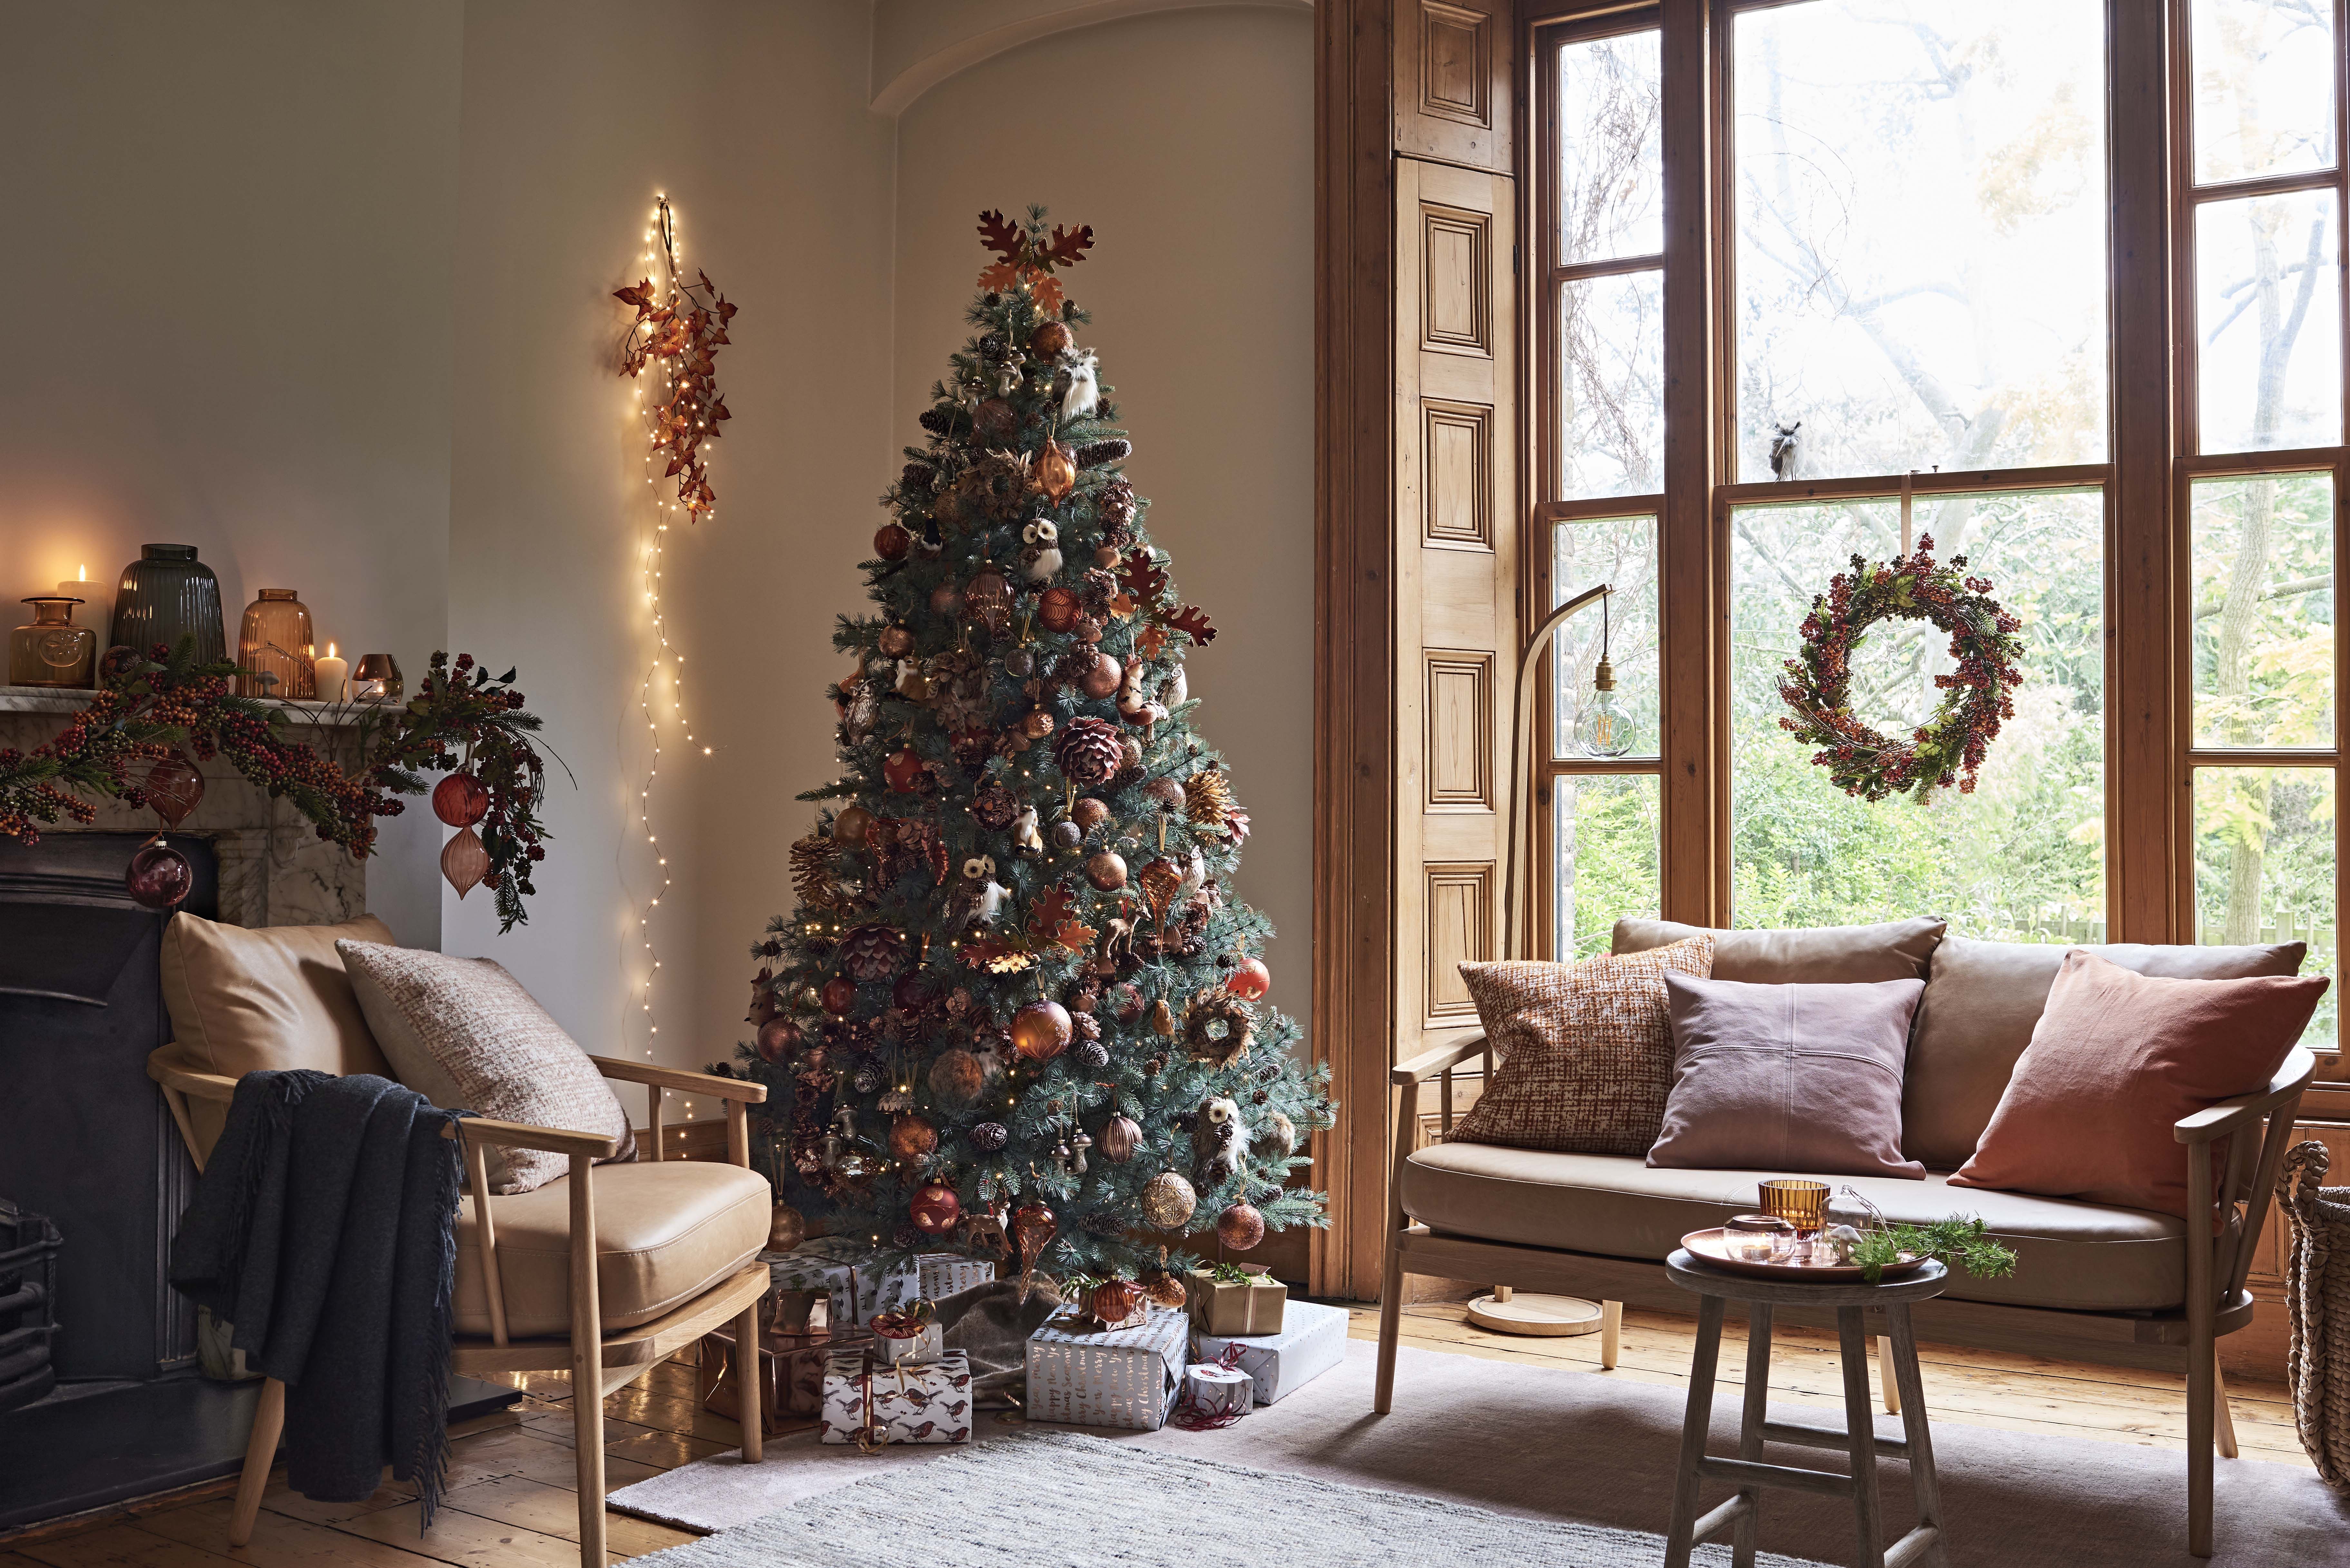 Jesenska božična drevesa - alternativni trend okrasitve božičnega leta 2018